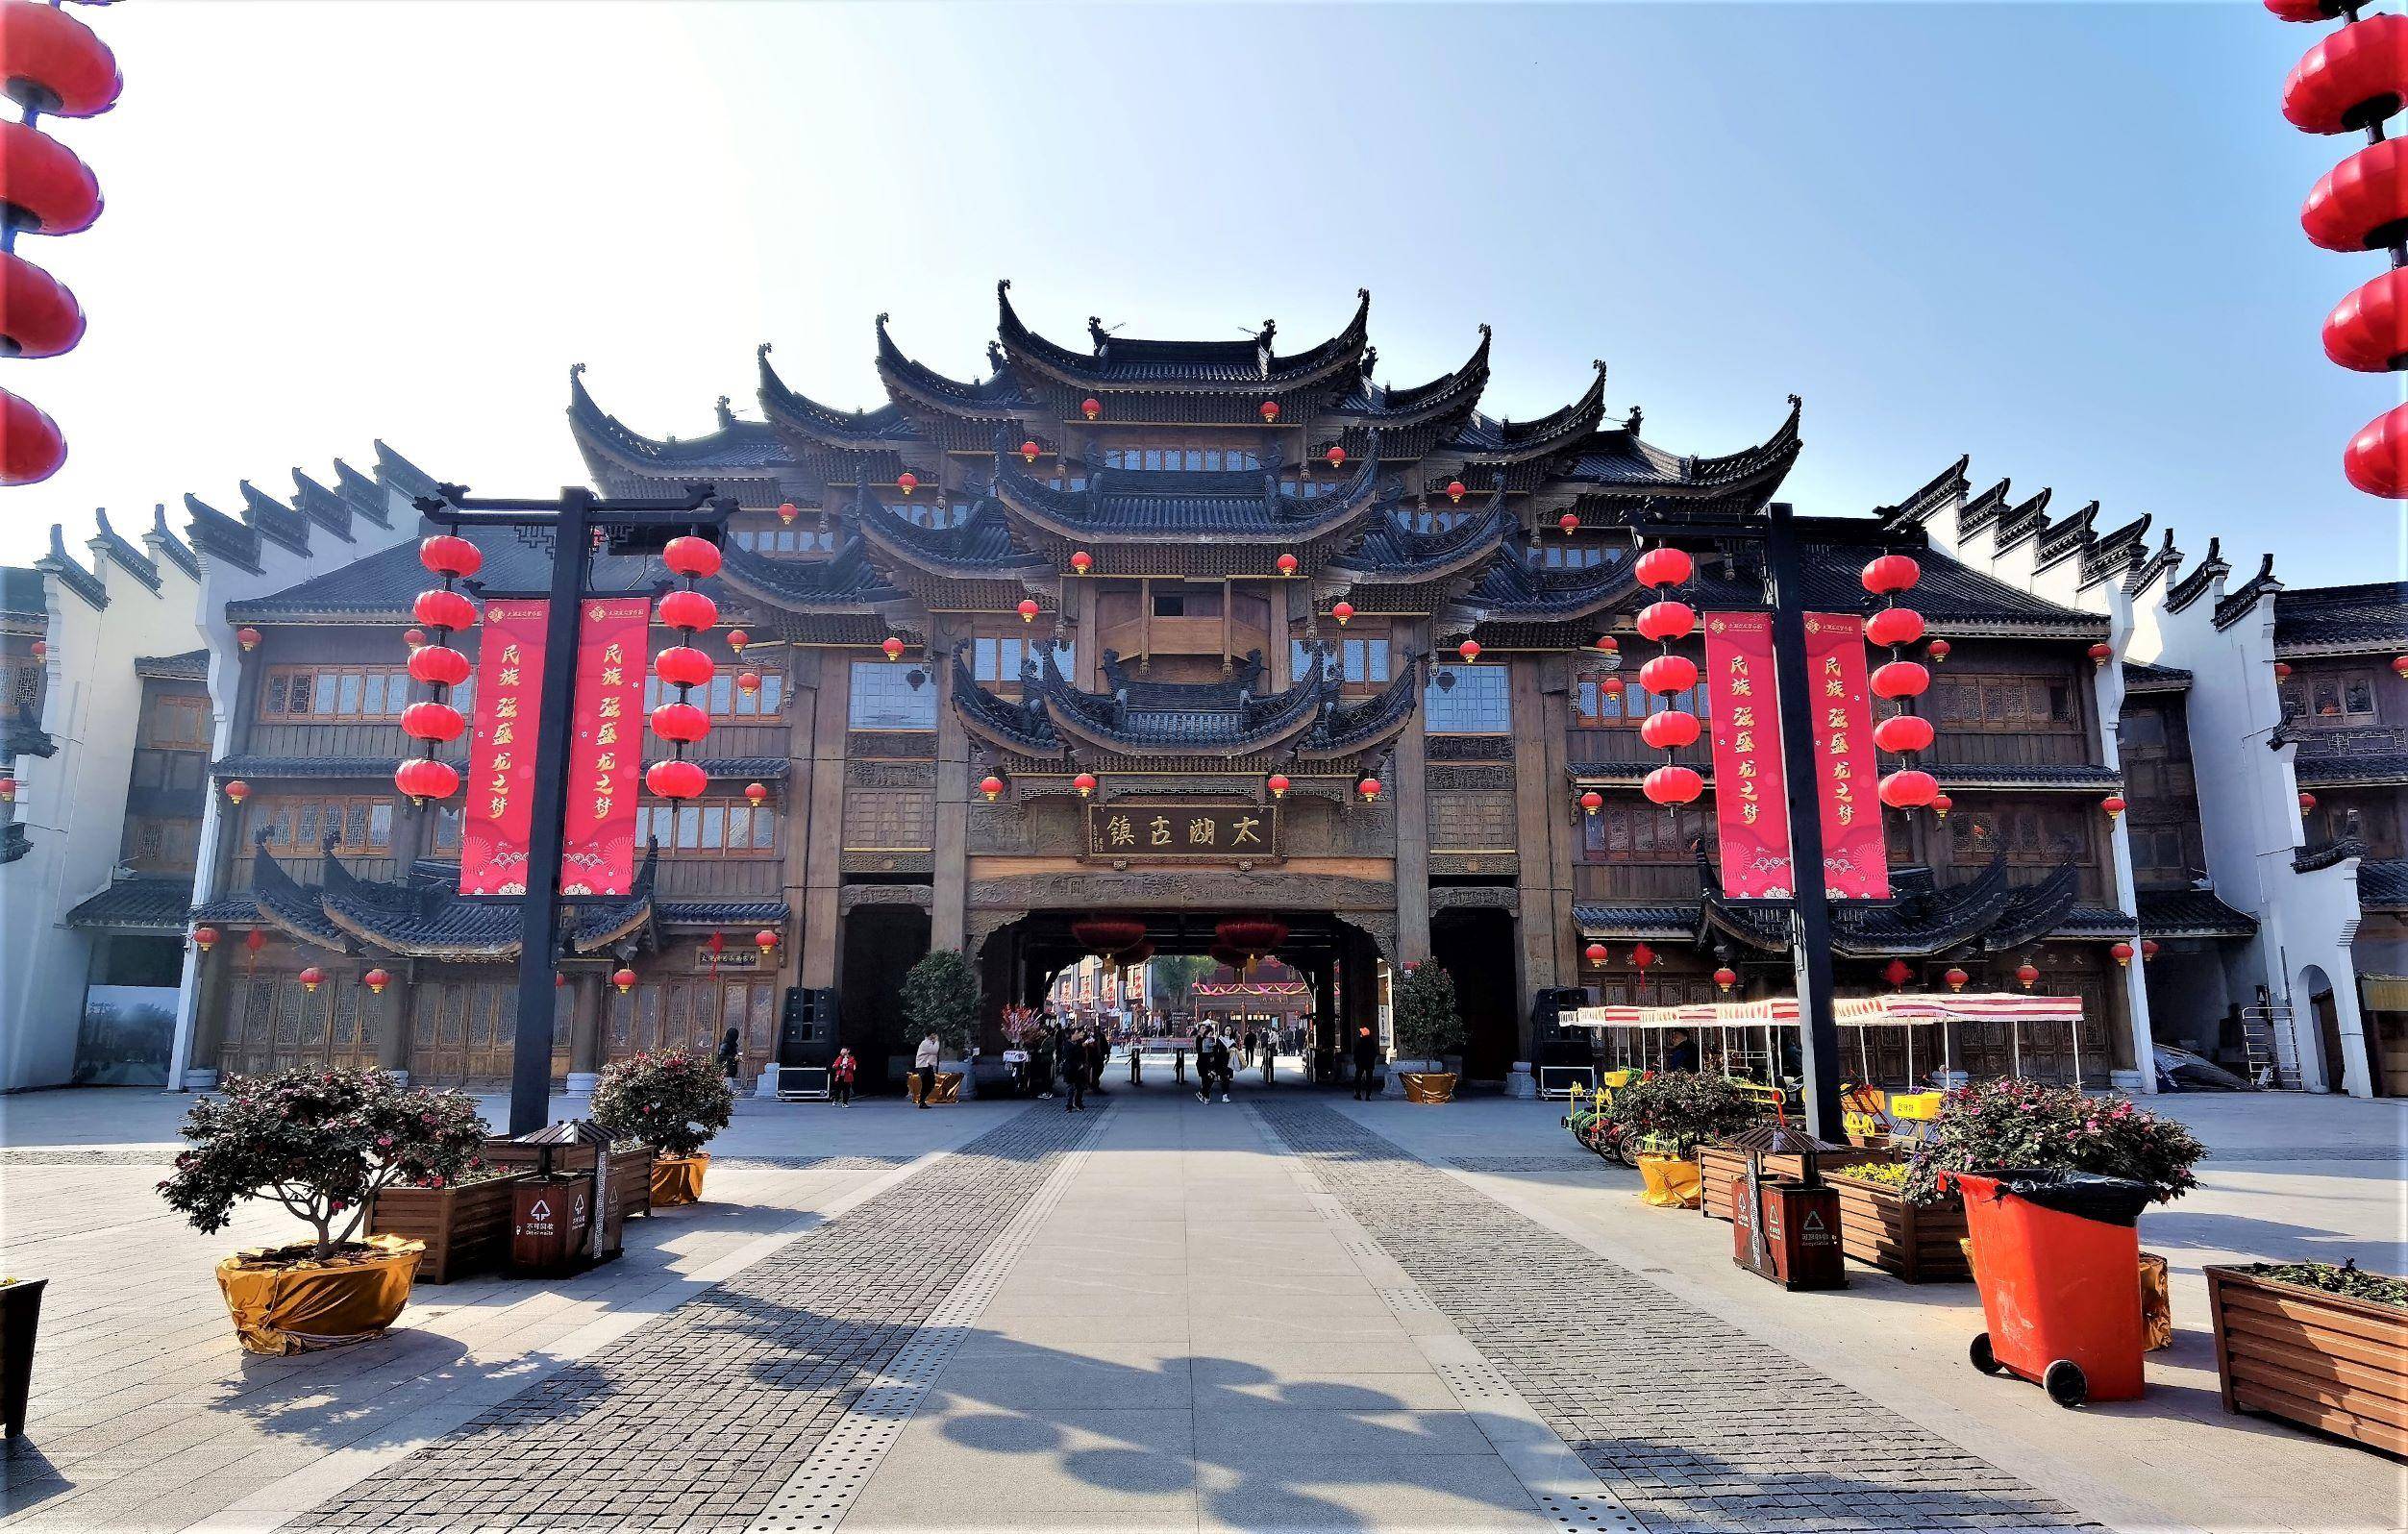 仿造的太湖古镇位于浙江湖州市长兴县杨小线太湖龙之梦乐园内,是一处